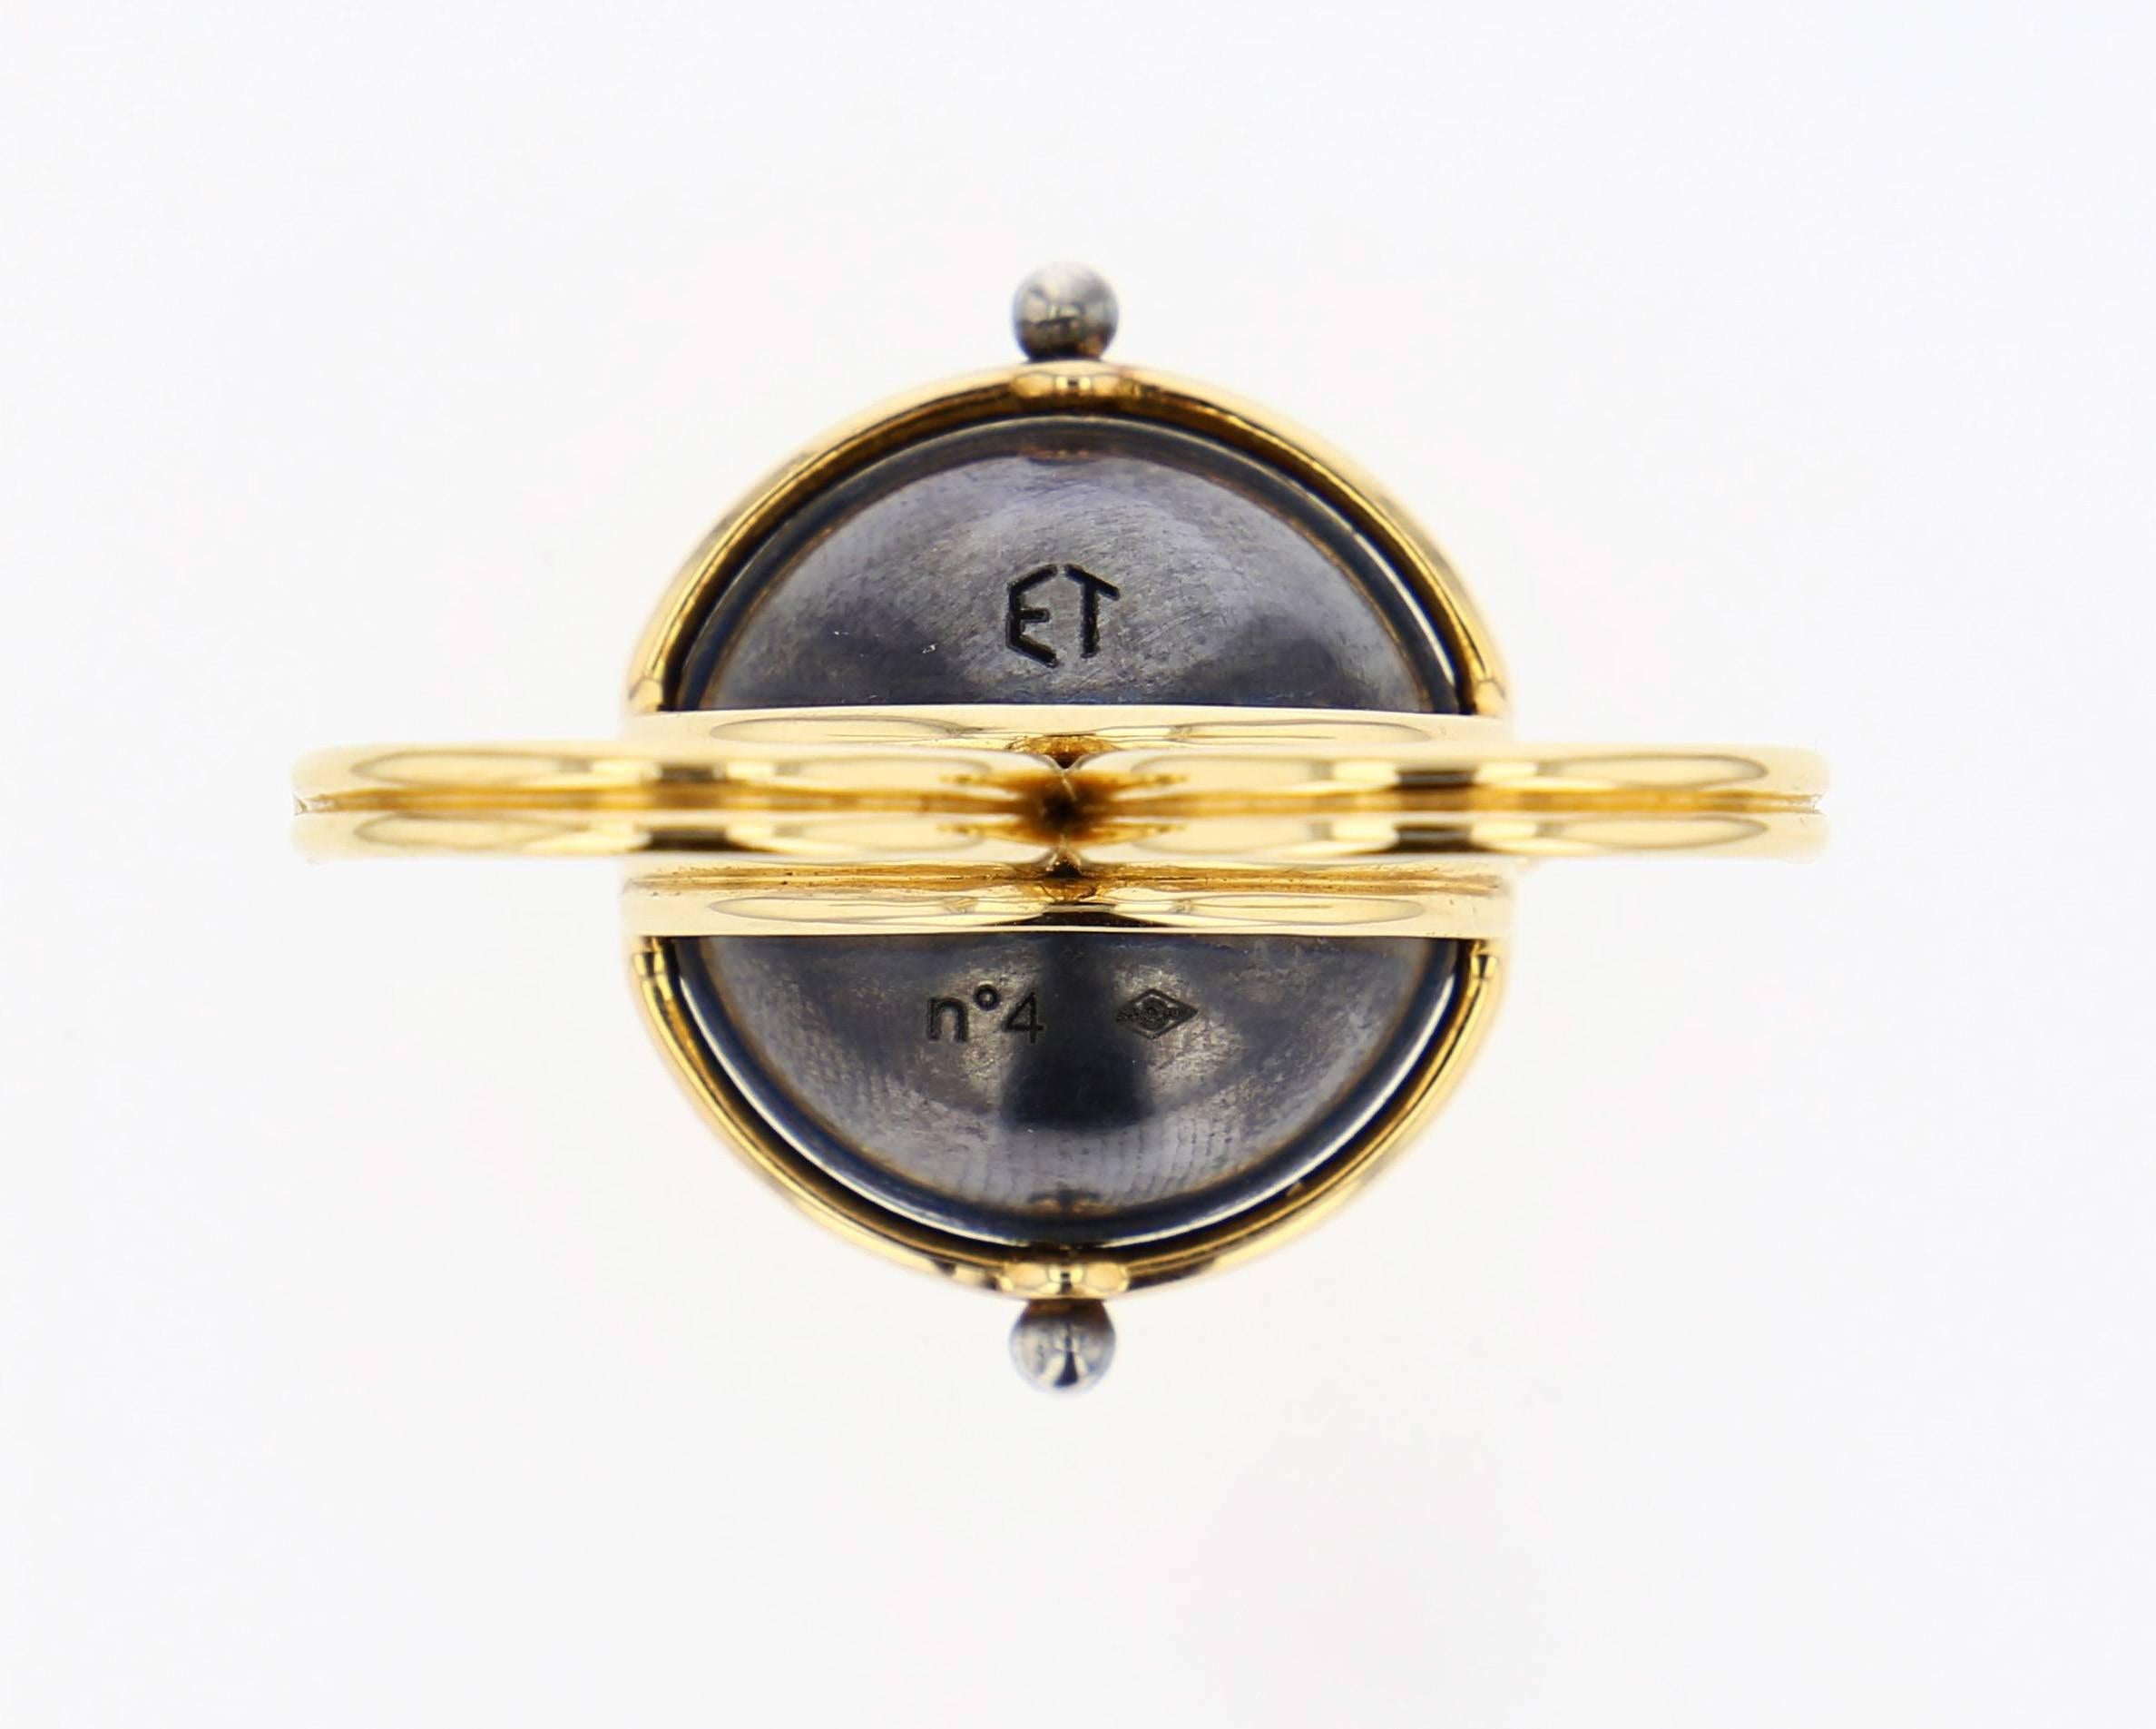 Neoclassical Elie Top Mecanique Celeste Bague Double Doigt Sphere Or Jaune, Diamants  For Sale